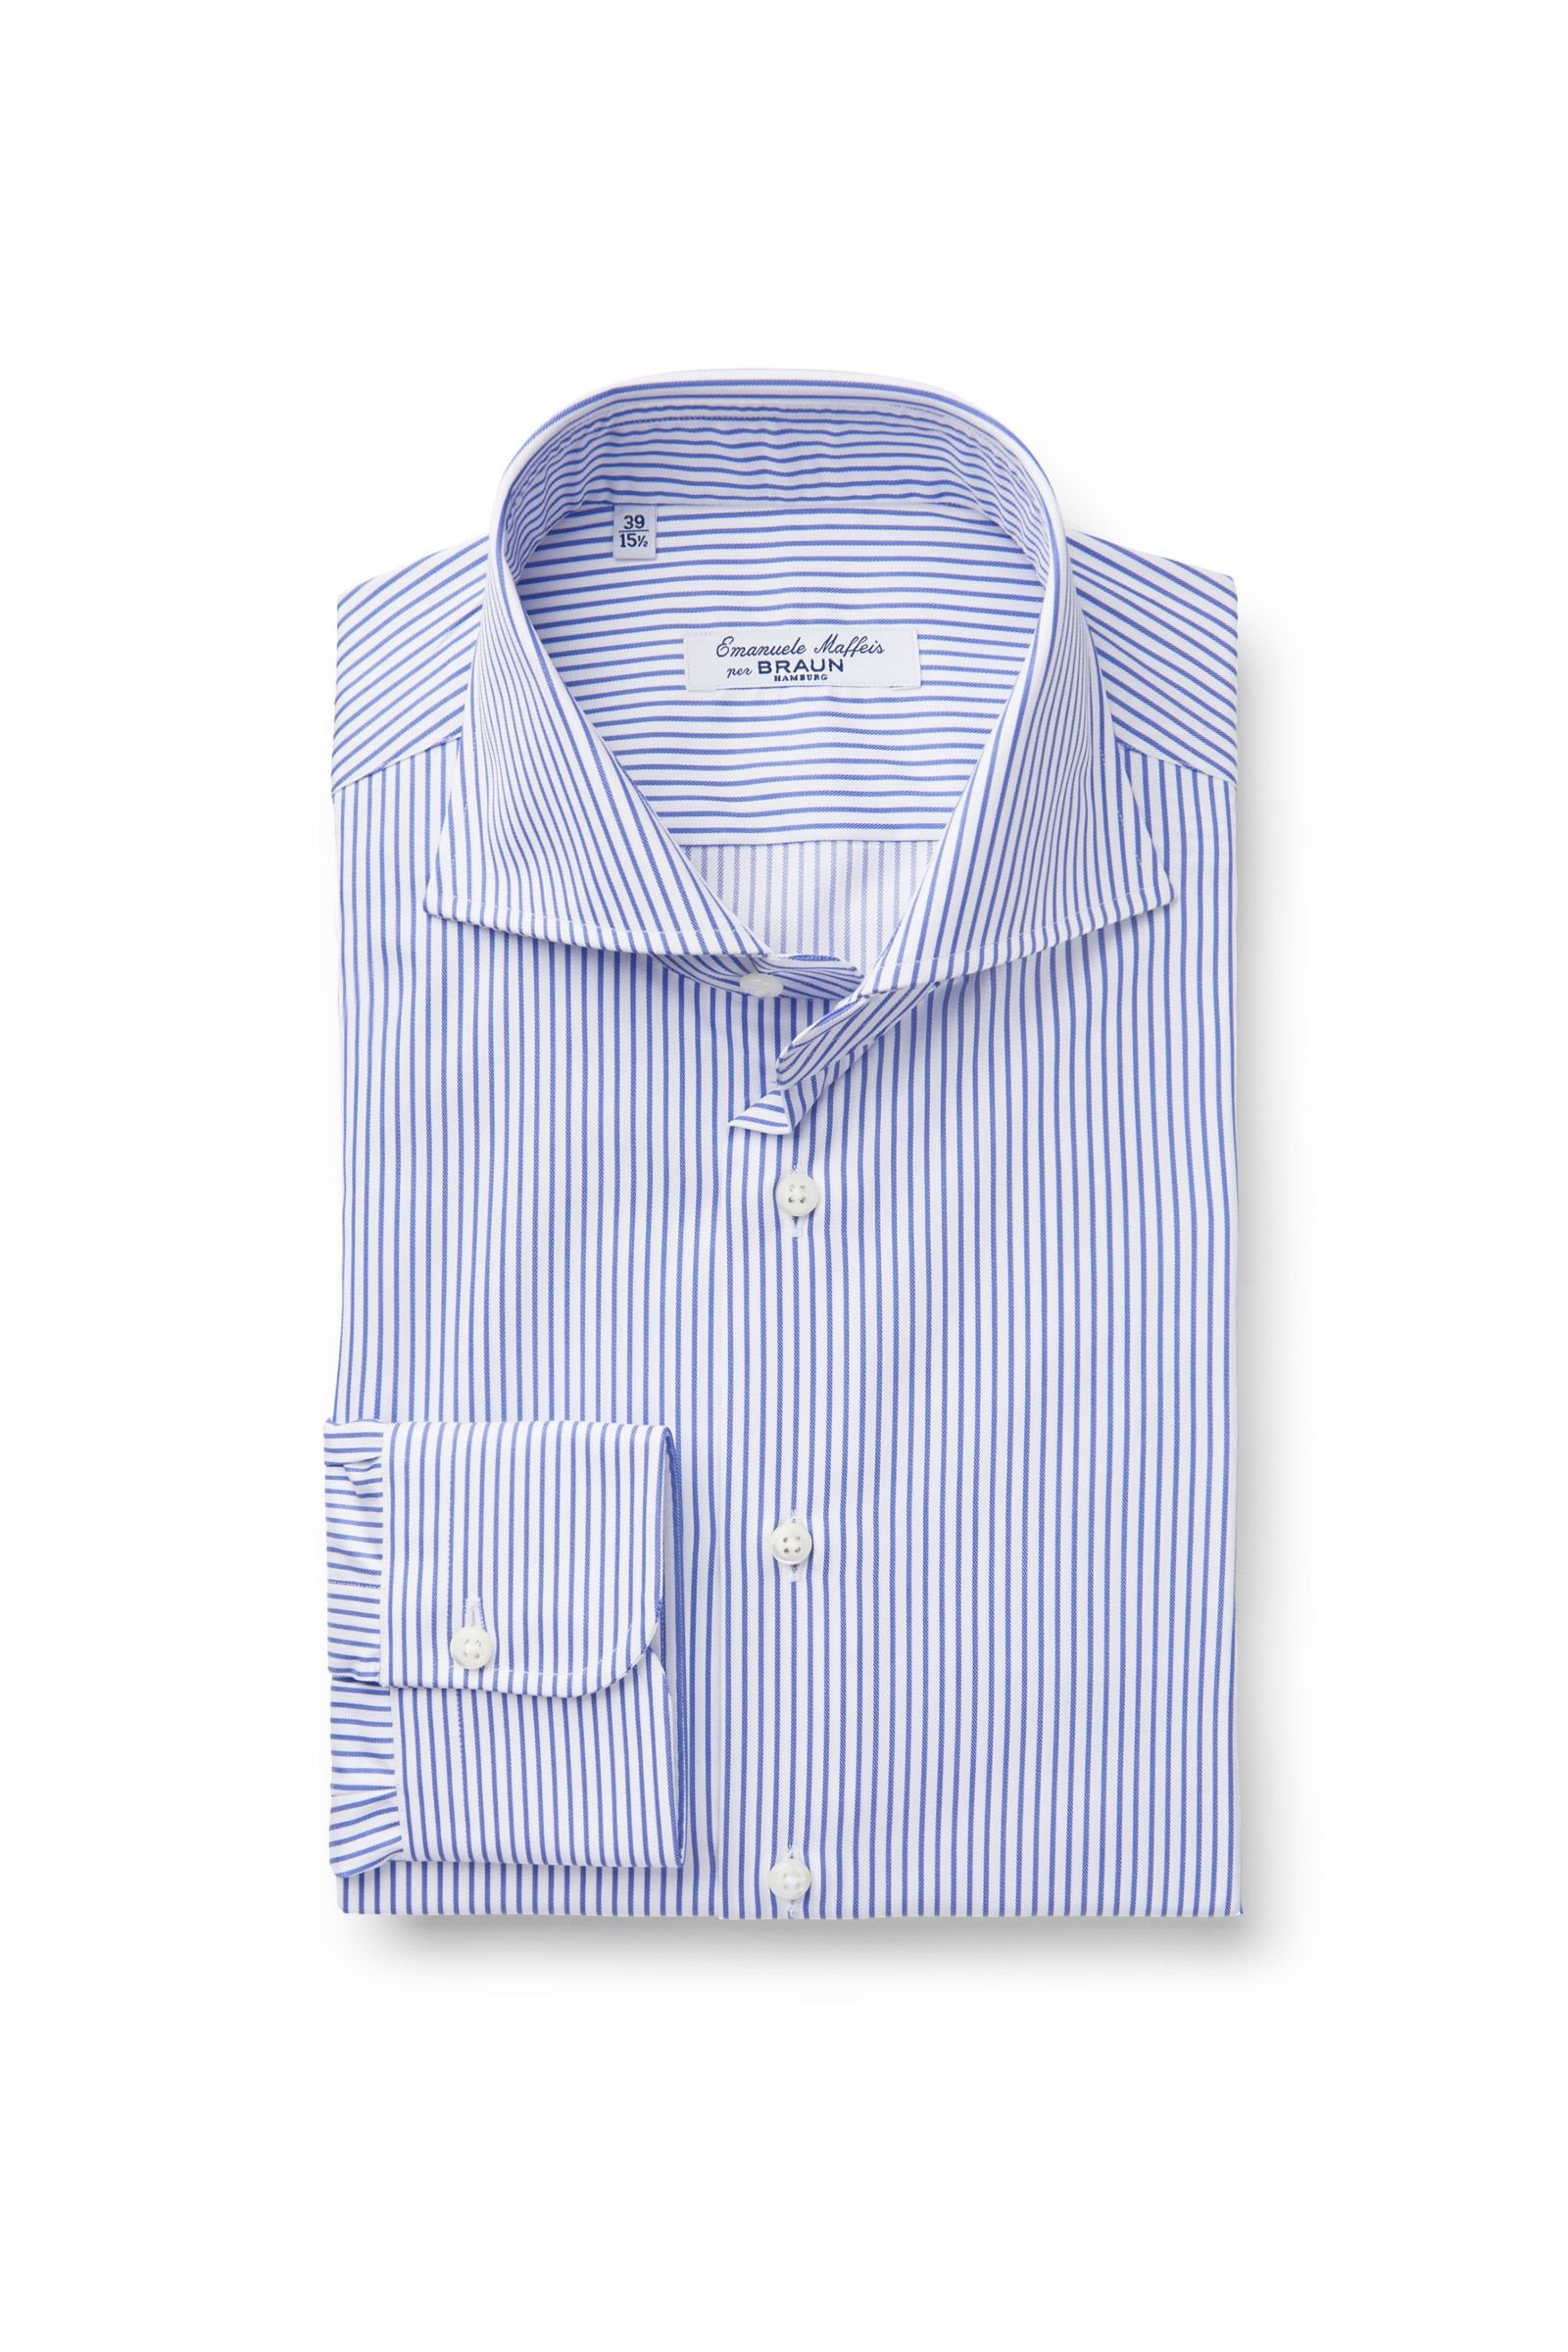 Business shirt 'Assen' shark collar blue striped